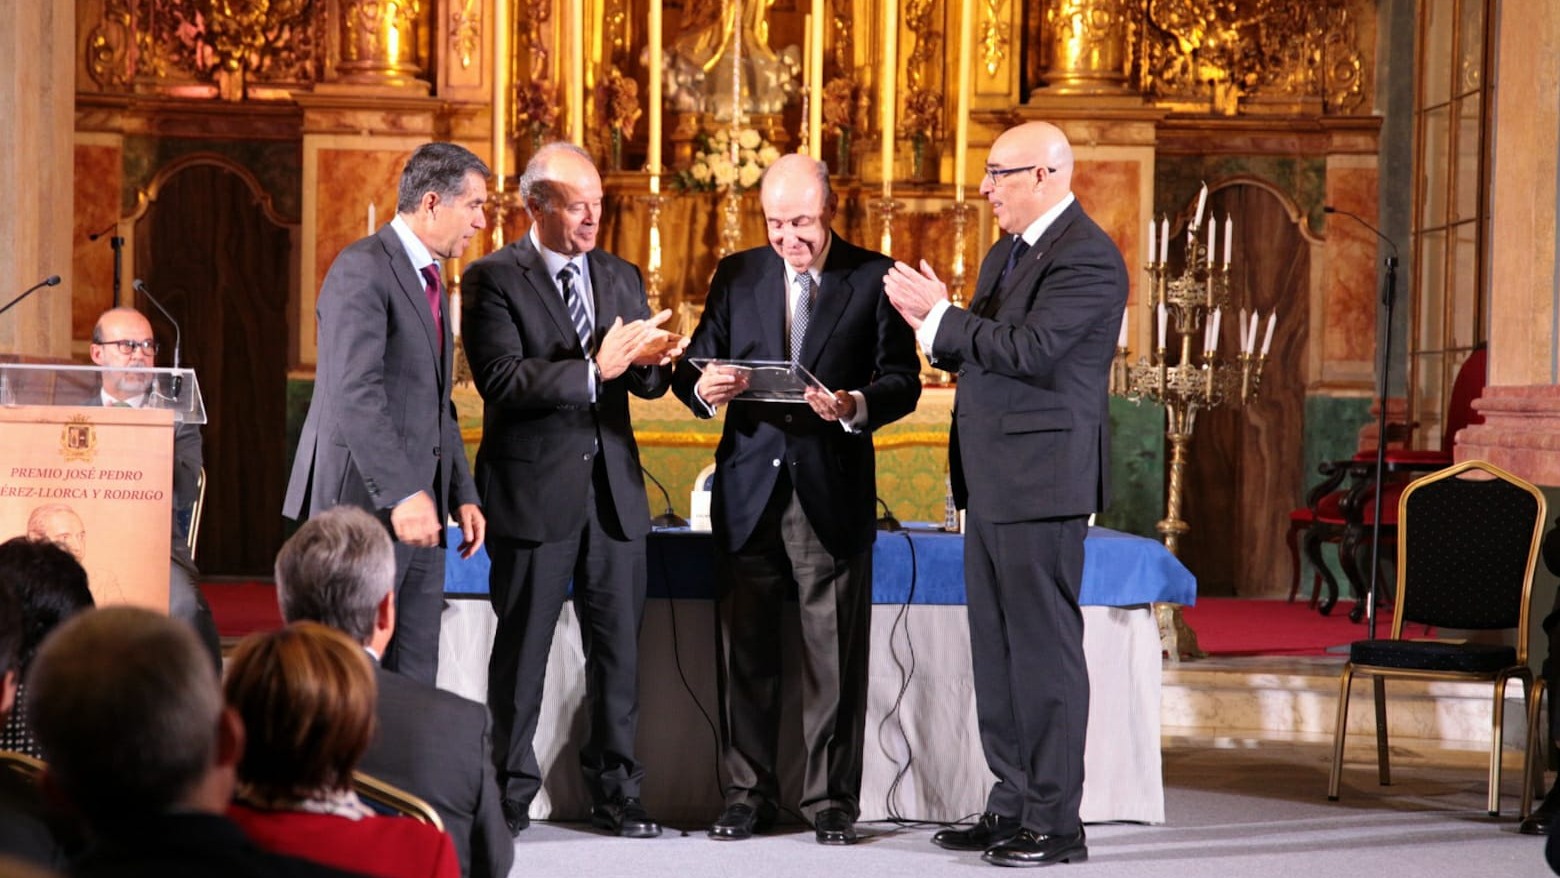 El ministro de Justicia, Juan Carlos Campo, durante la entrega del I Premio &lsquo;Jos&eacute; Pedro P&eacute;rez-Llorca y Rodrigo&rsquo;